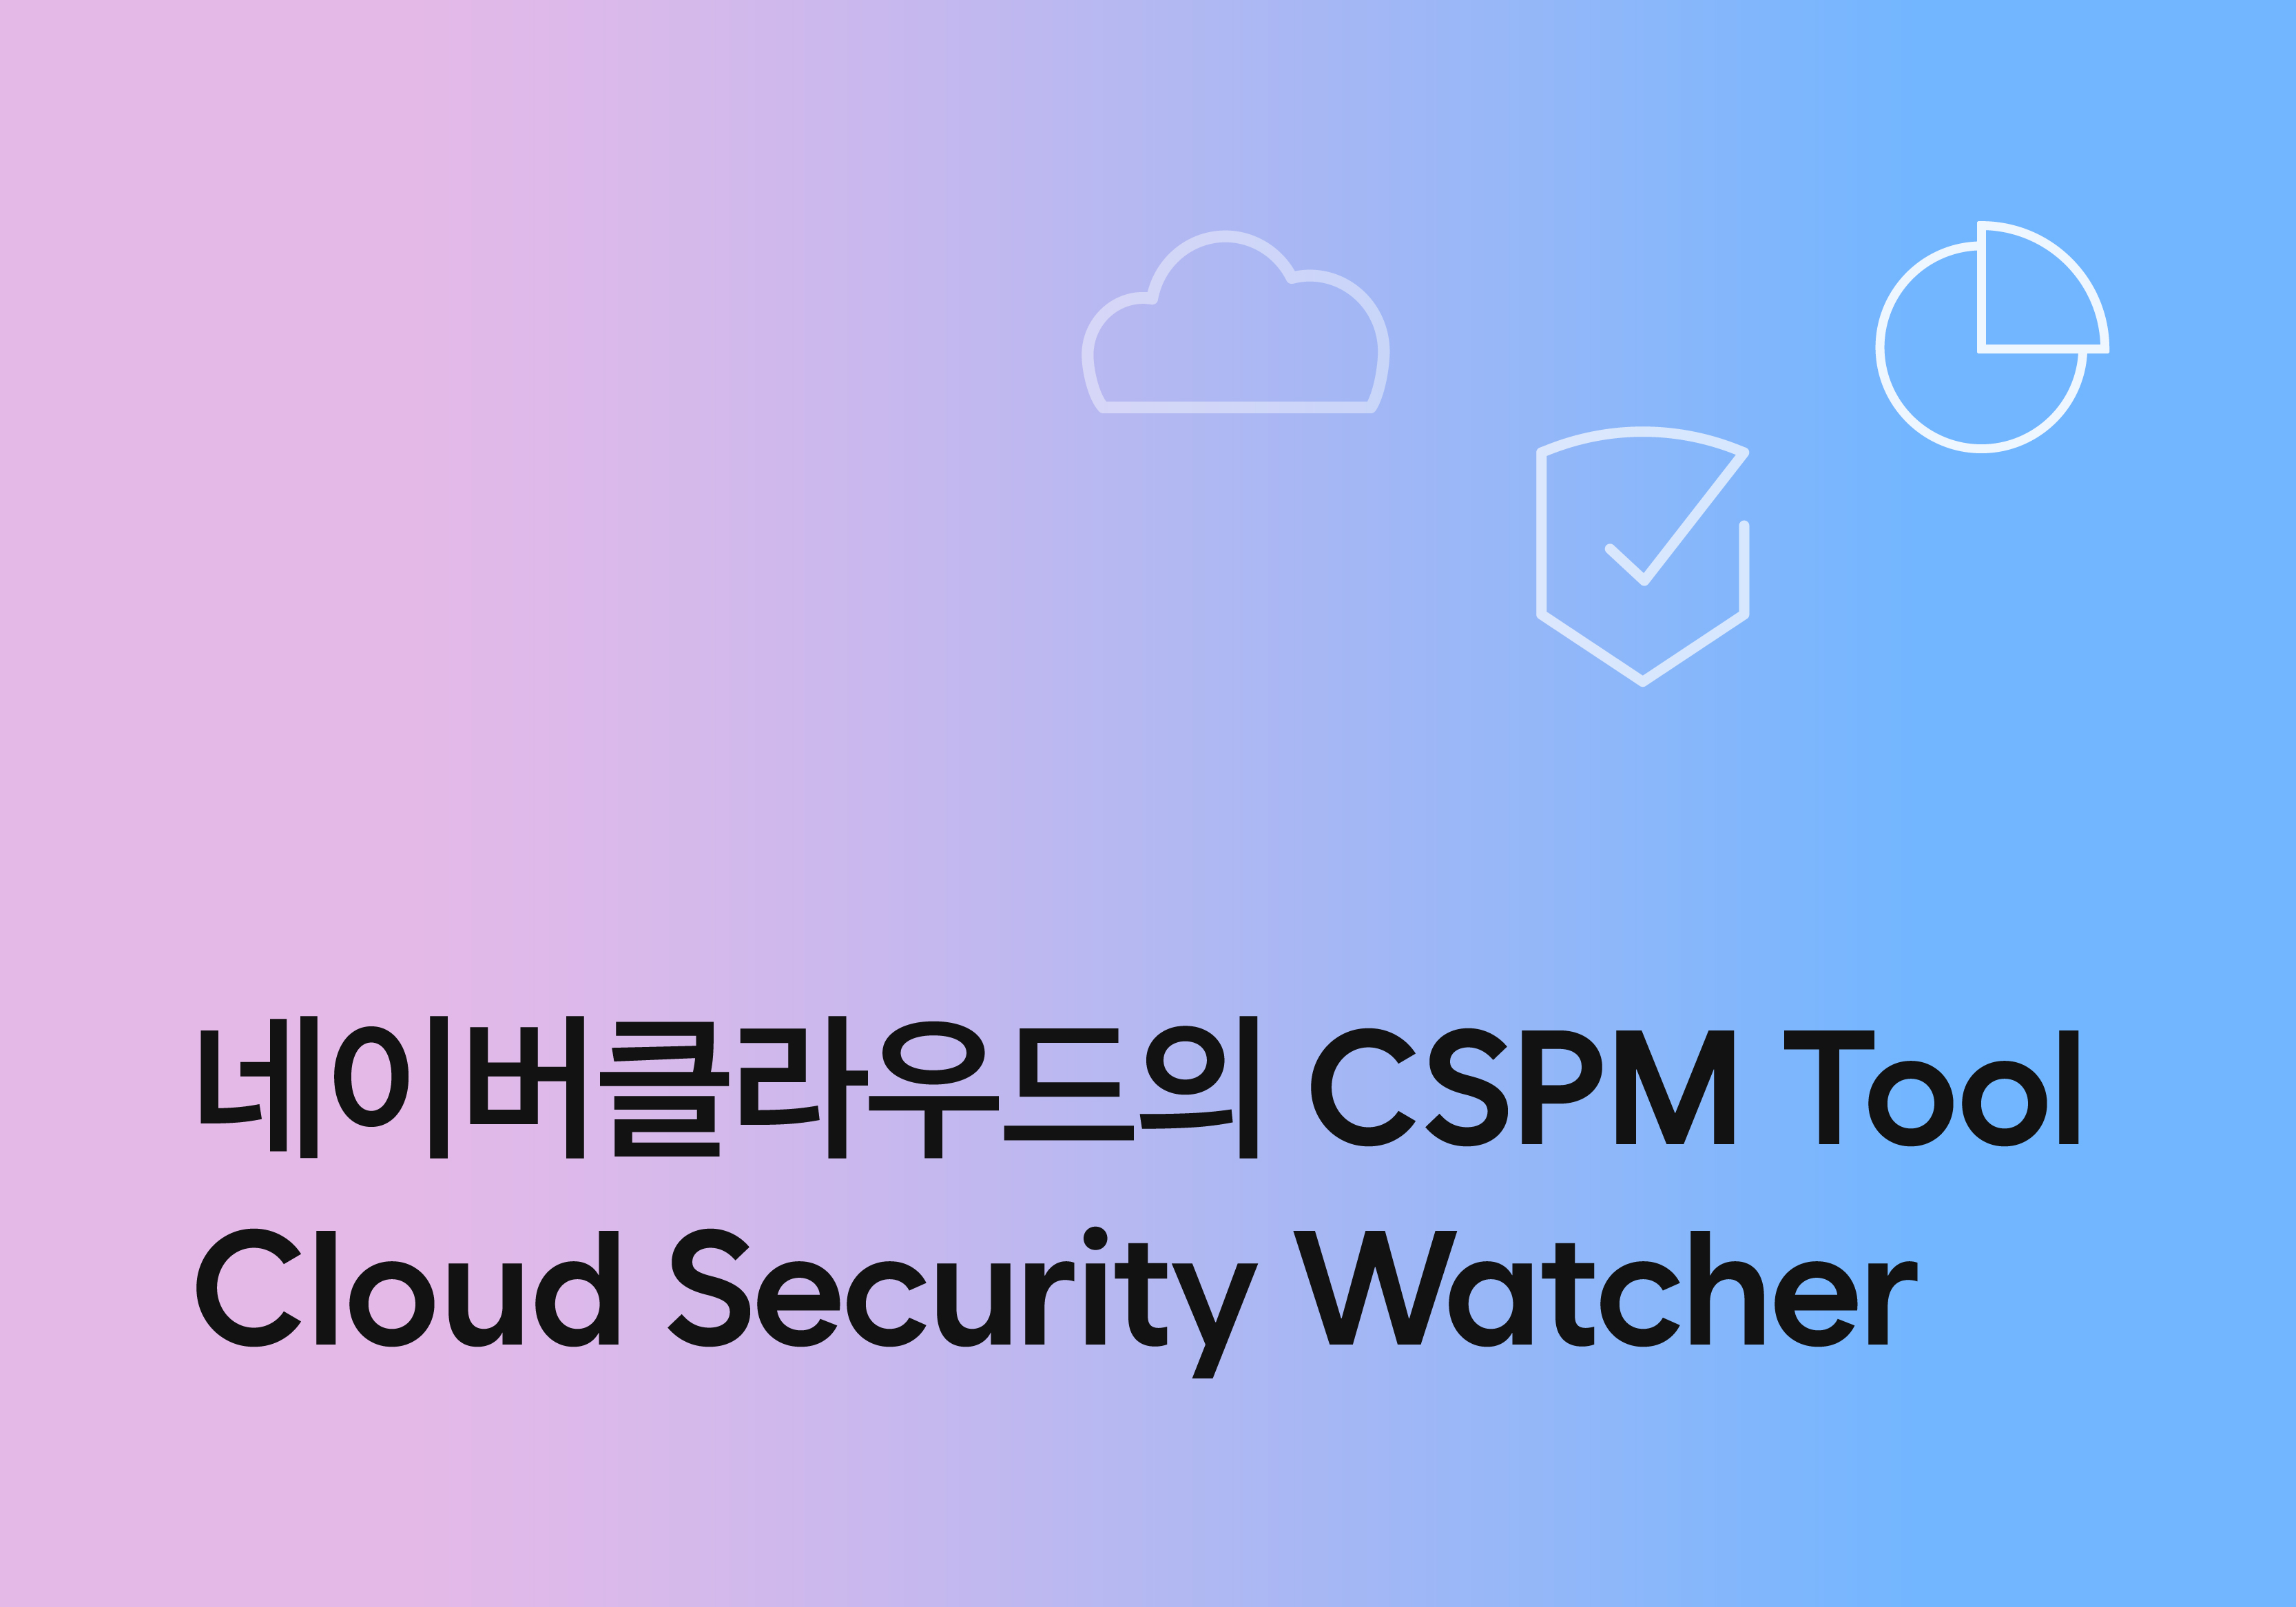 네이버클라우드의 CSPM Tool, Cloud Security Watcher